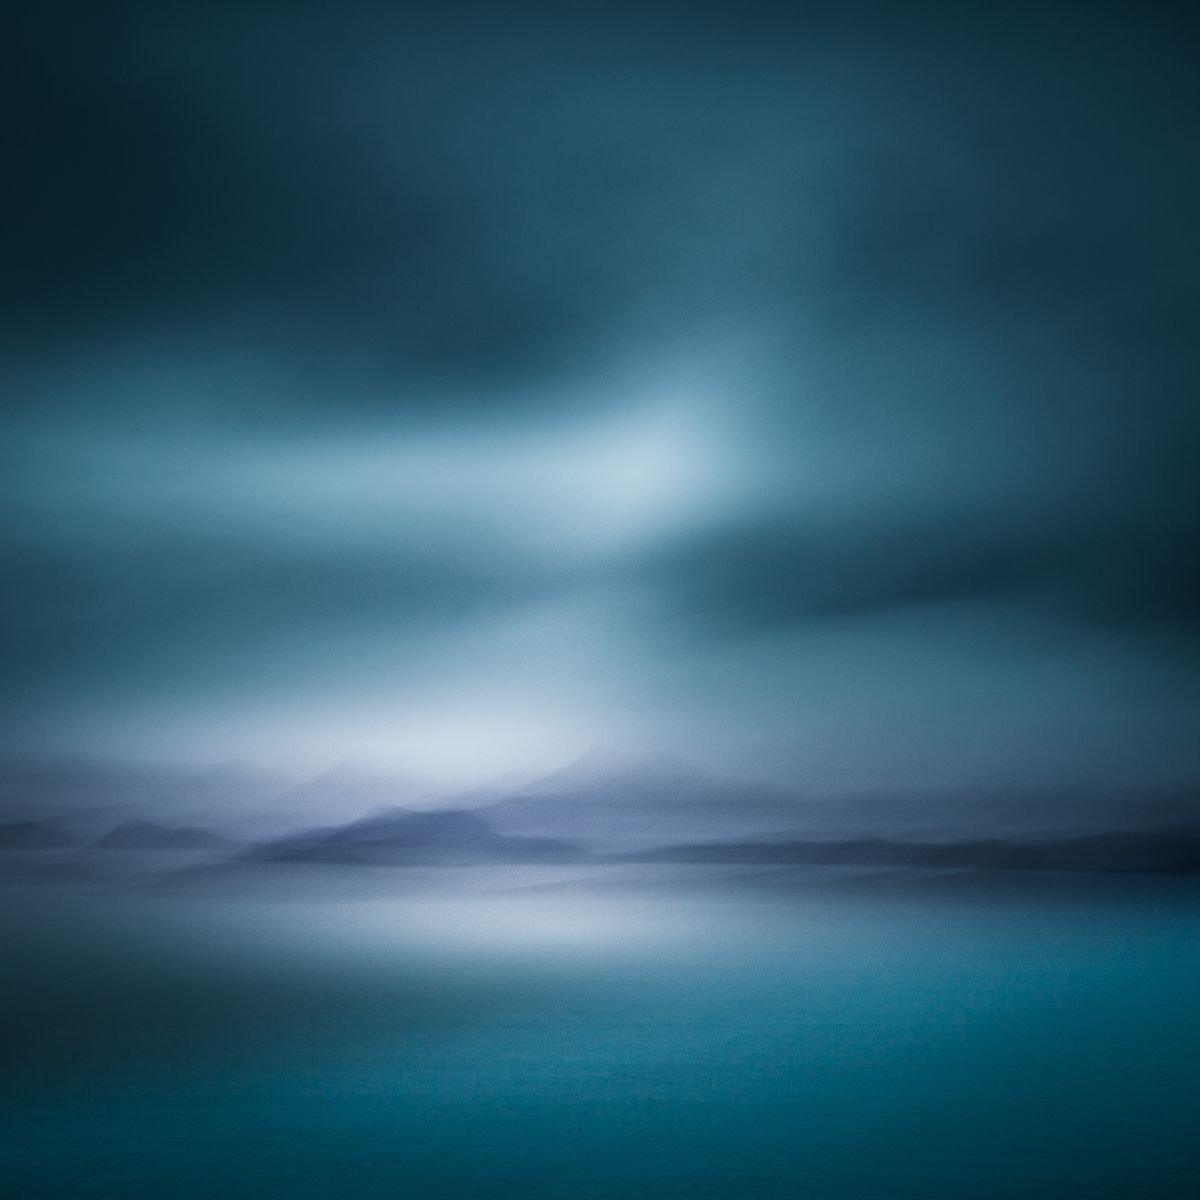 Island Dreams II, Relaxing Abstract landscape in Teal Blue, Isle of Skye by Lynne Douglas